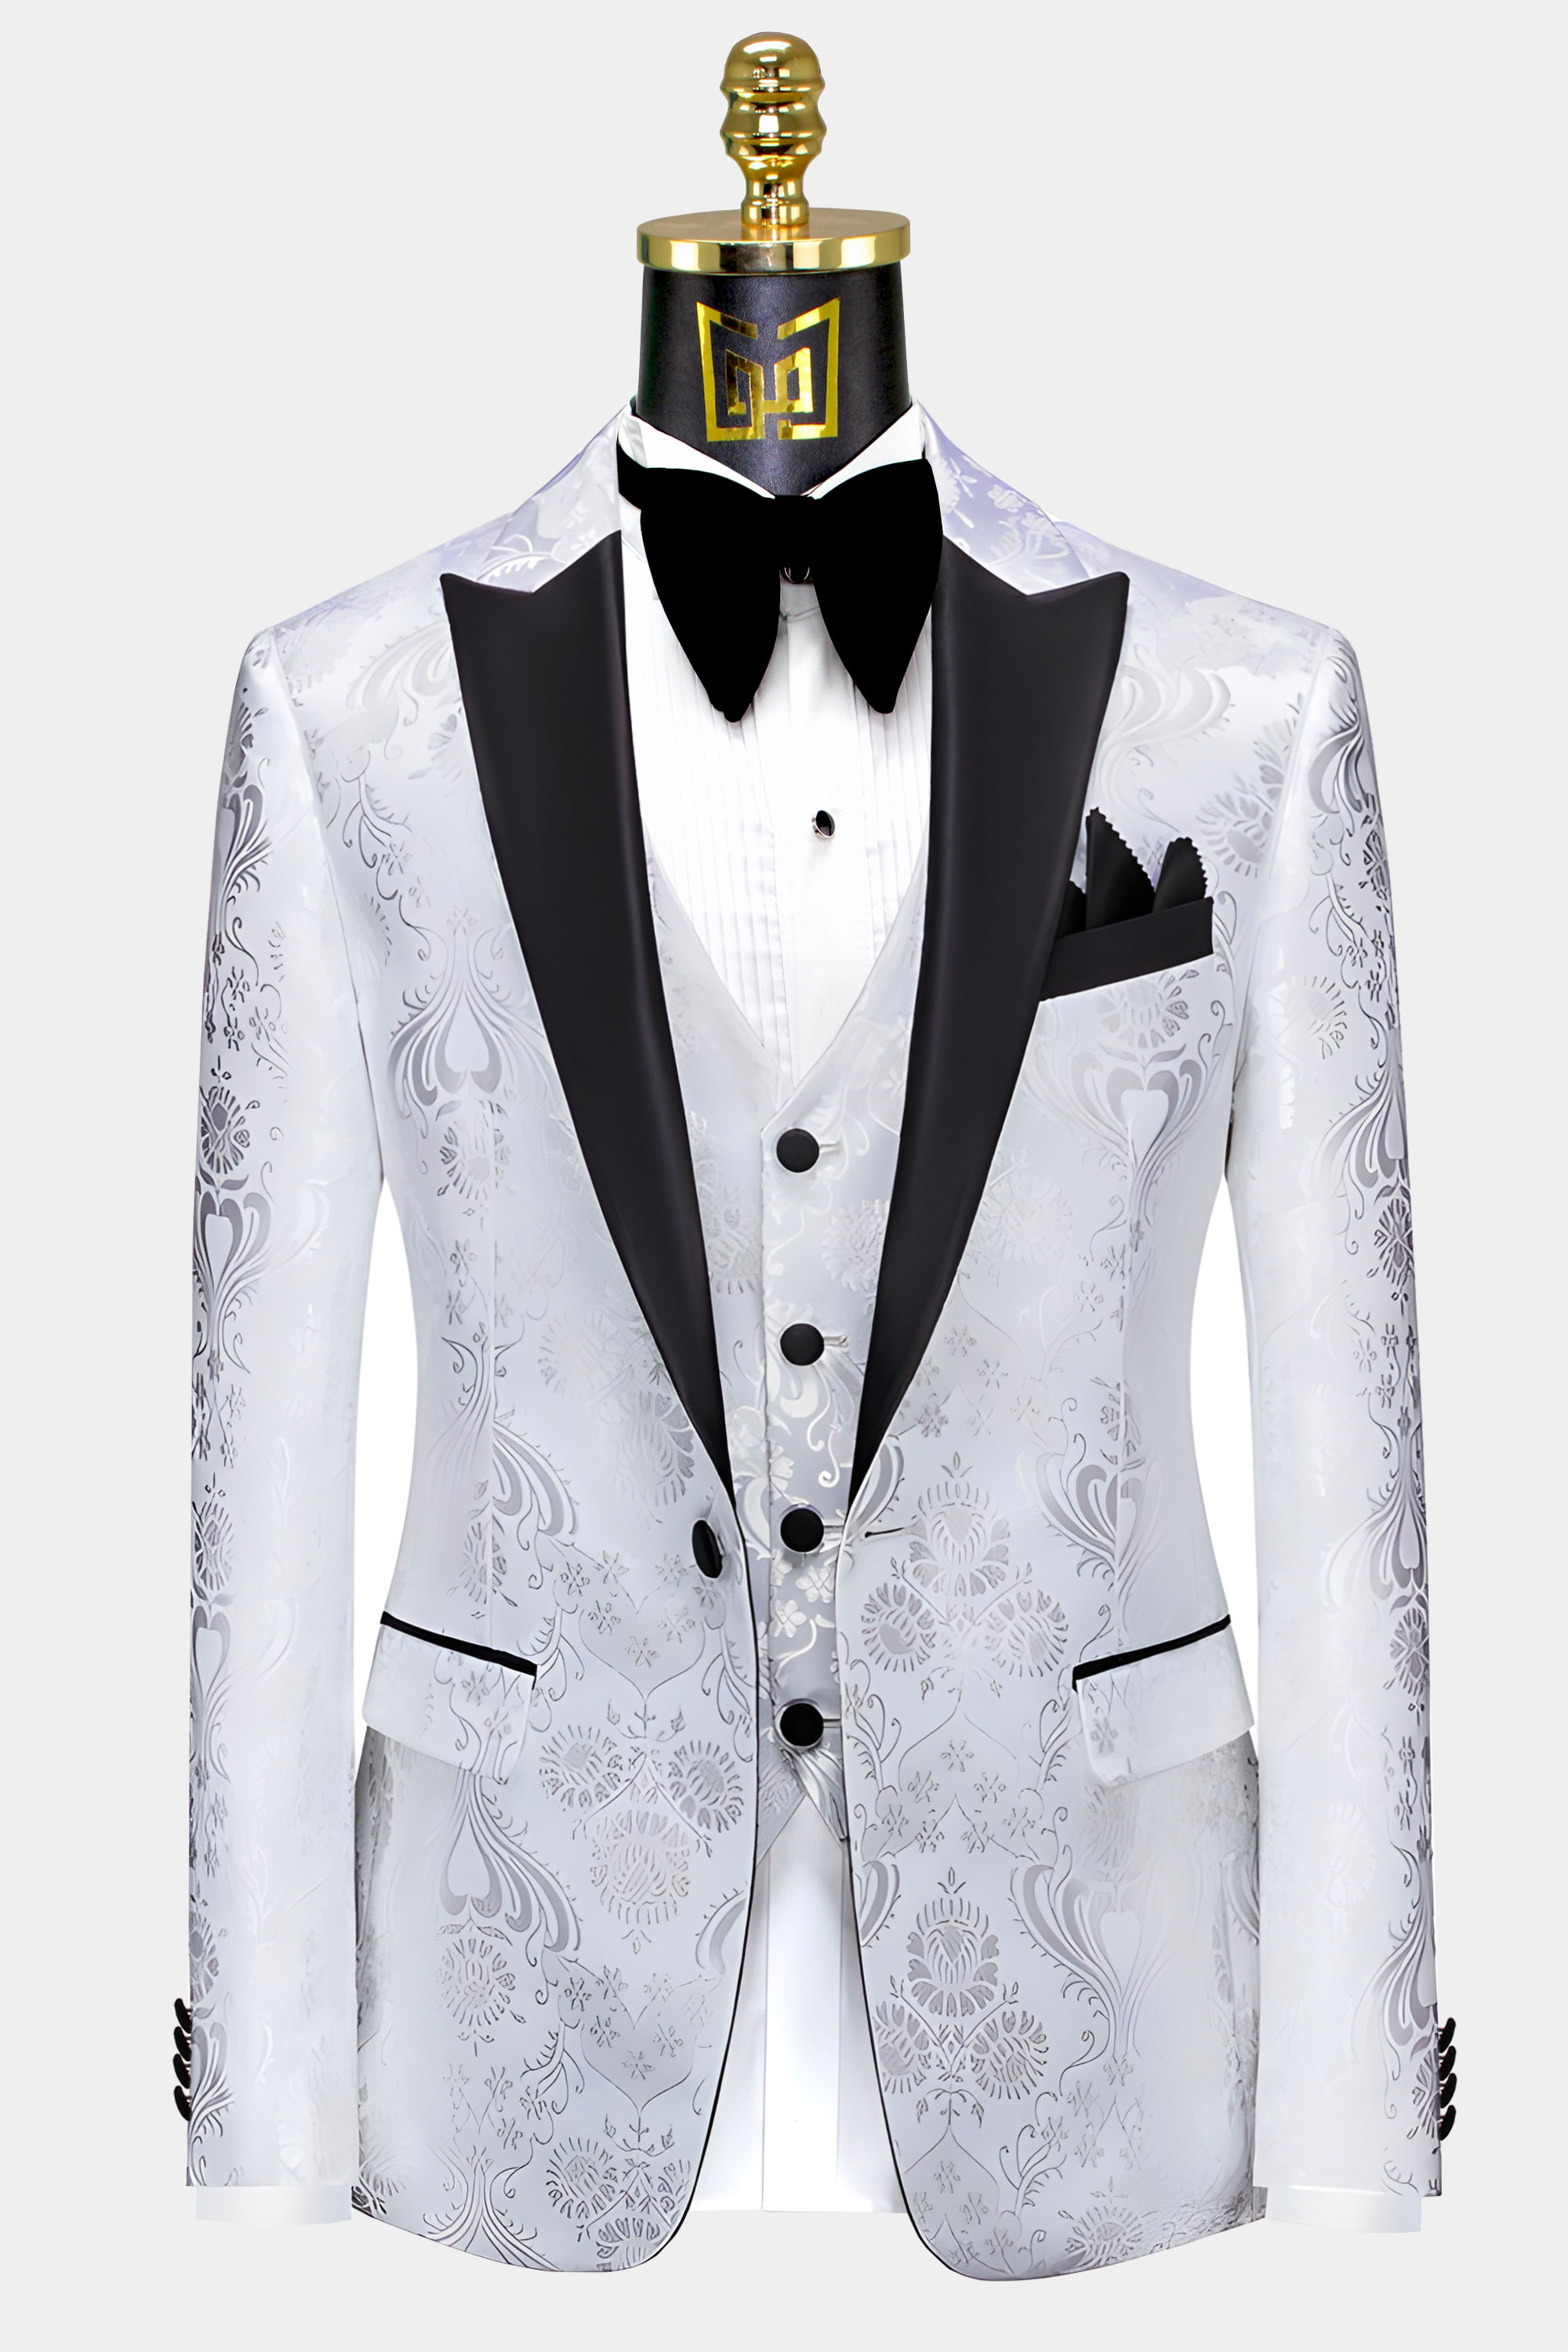 White-Silver-Floral-Tuxedo- Jacket-from-Gentlemansguru.Com